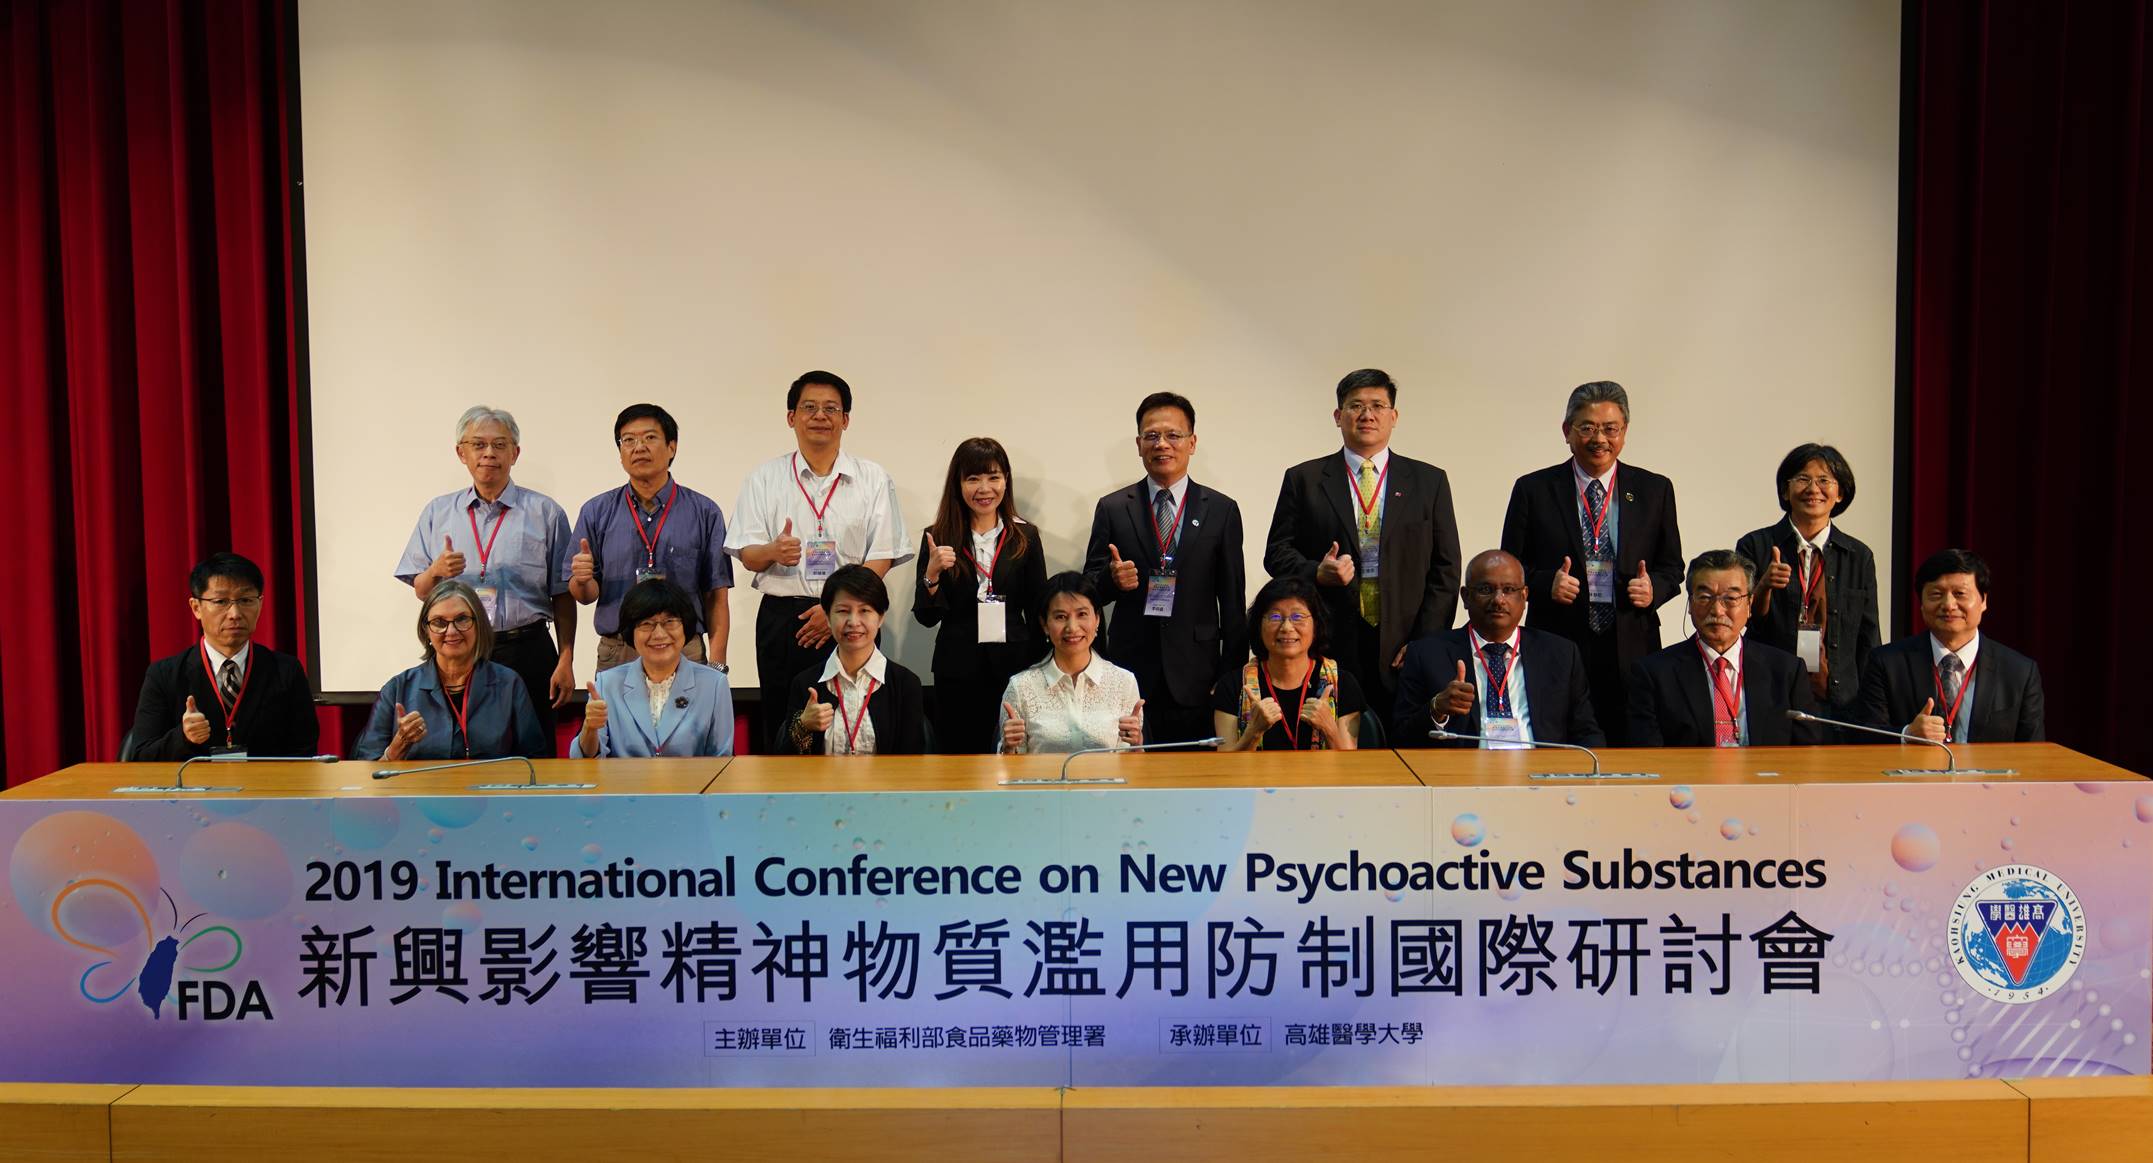 「2019新興影響精神物質濫用防制國際研討會」大合照